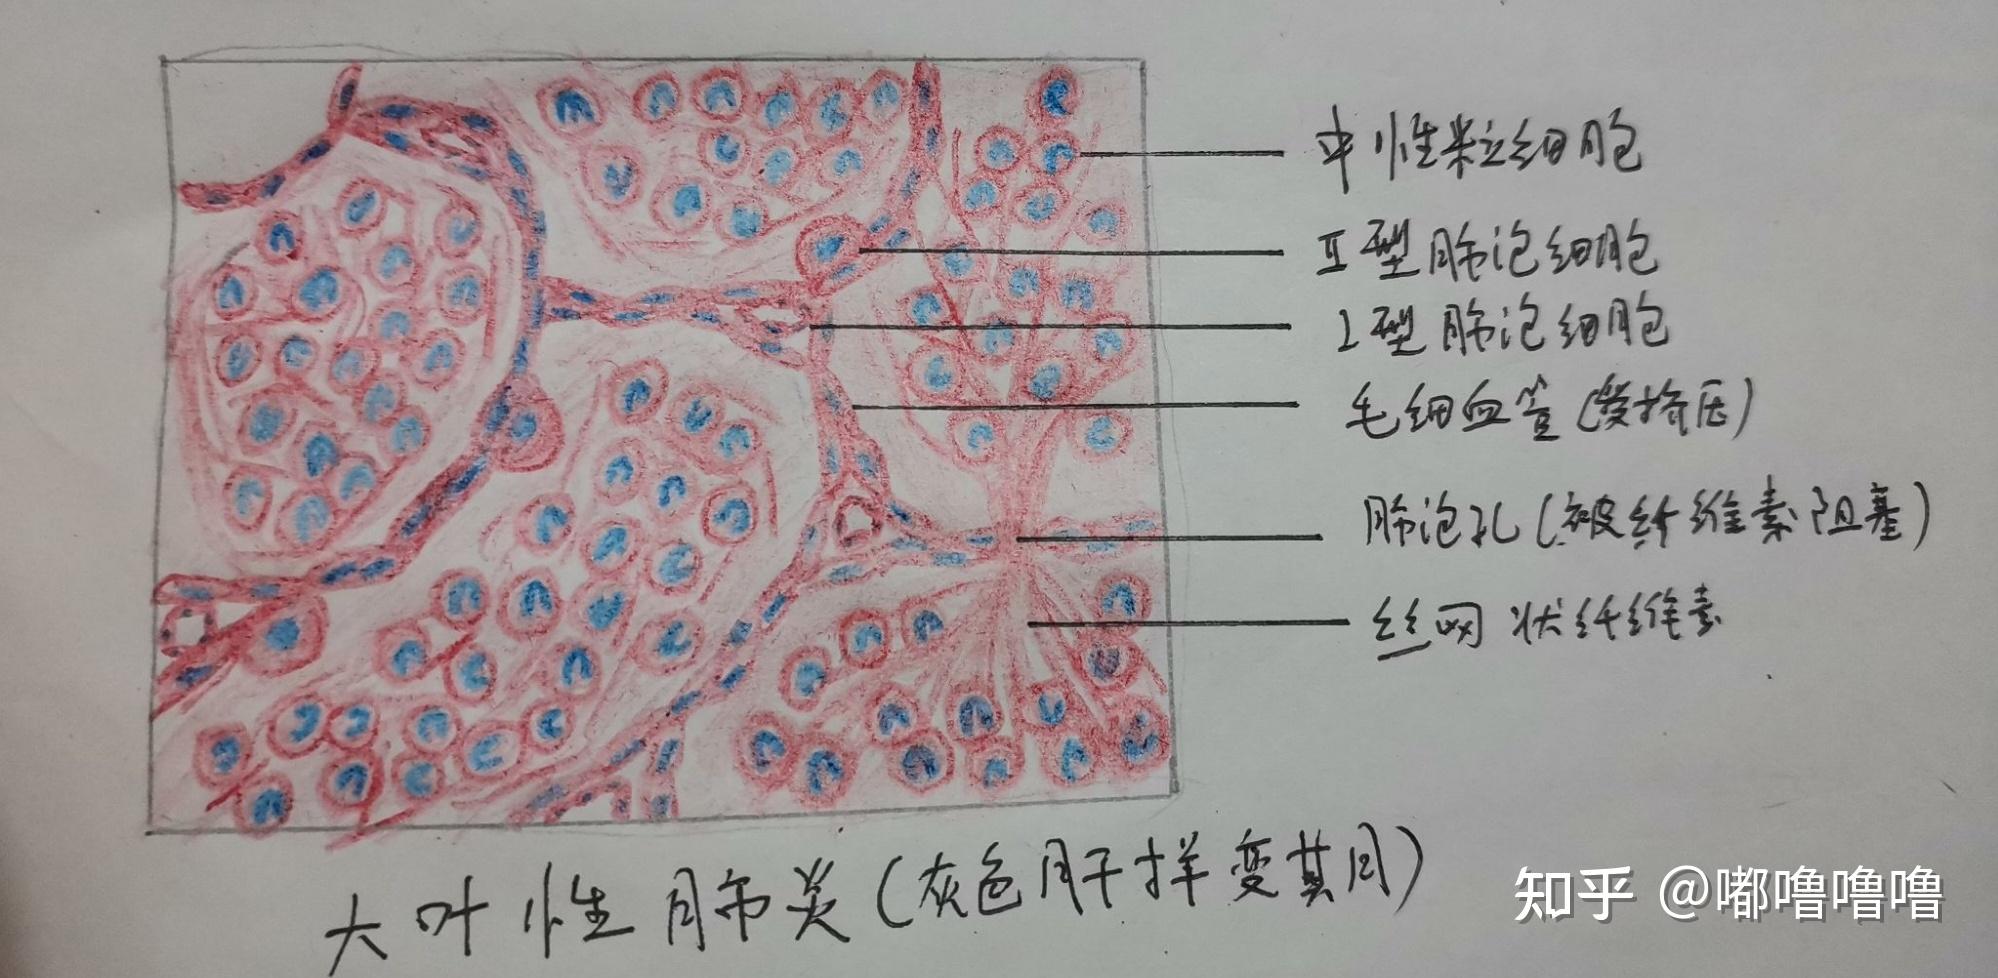 肺炎杆菌荚膜染色绘图图片